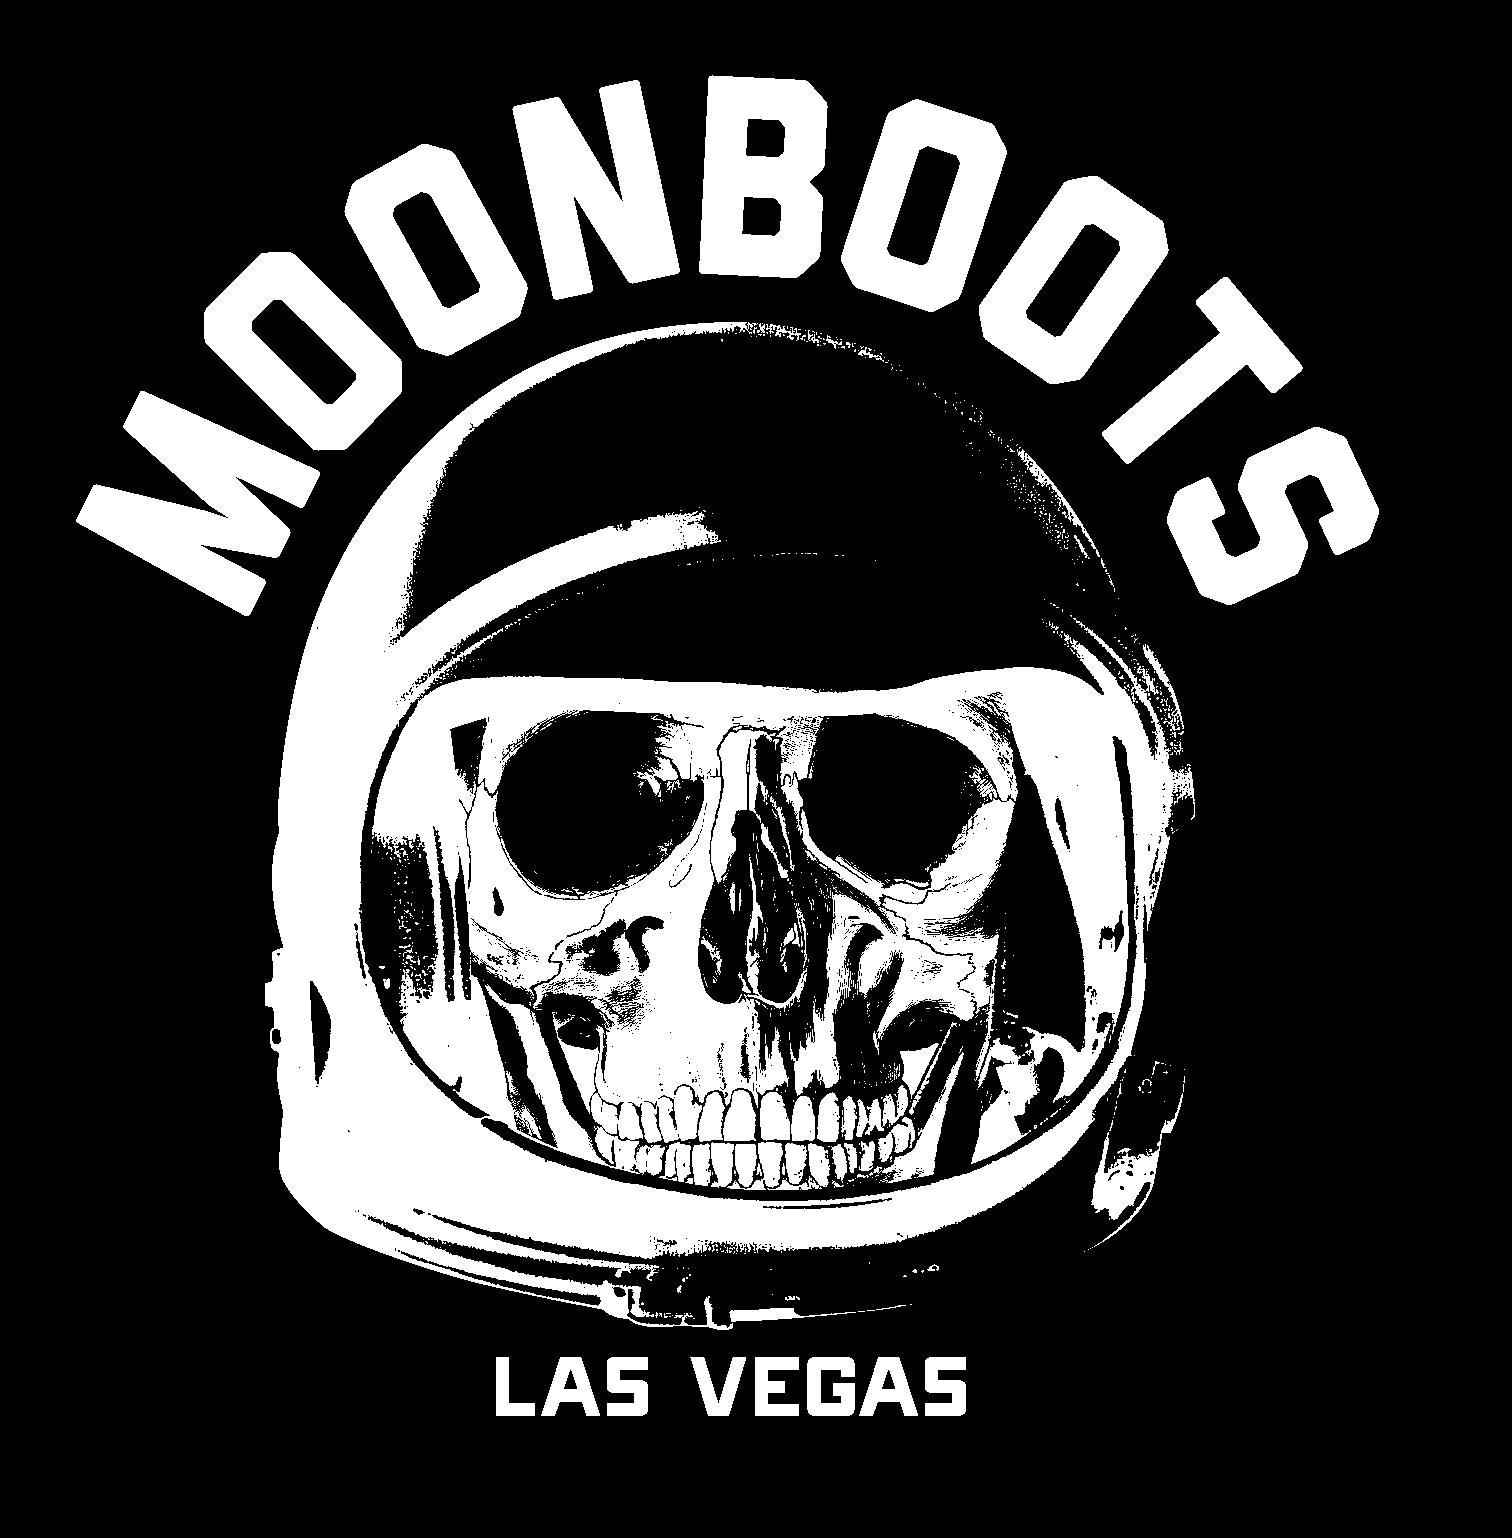 Moonboots